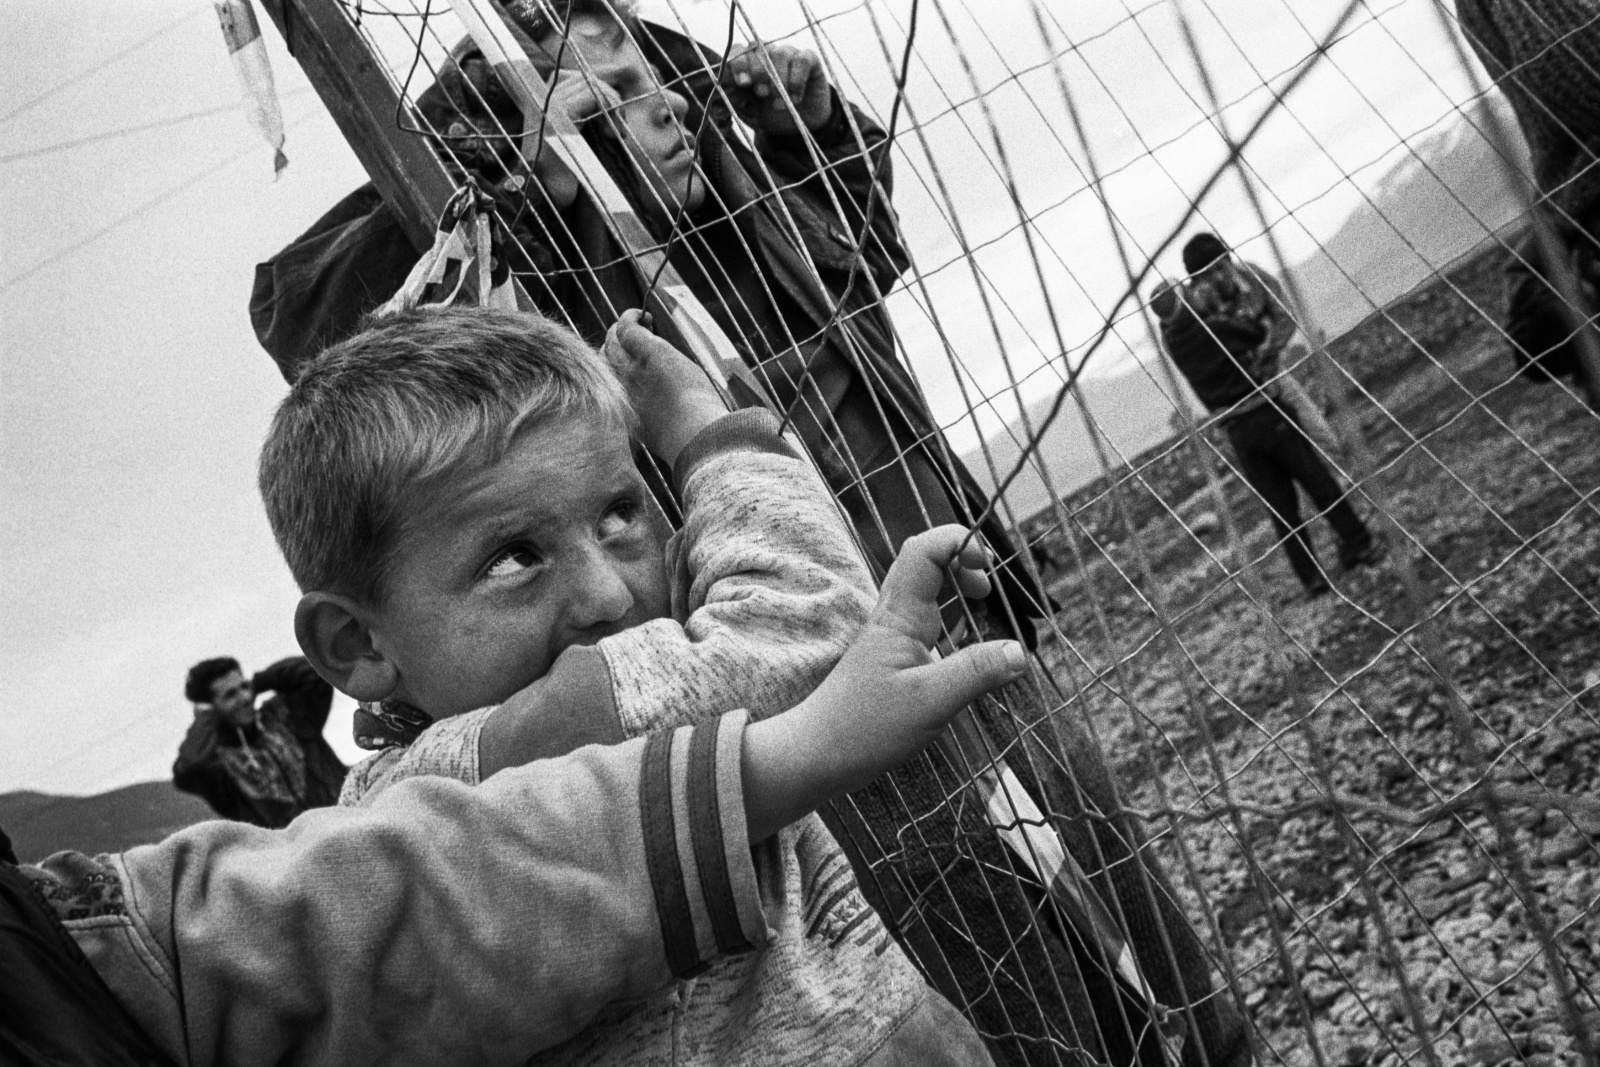 Albania 1999, frontiera di Morini con il Kosovo, esodo di profughi kosovari in fuga dalla pulizia etnica delle bande paramilitari serbe